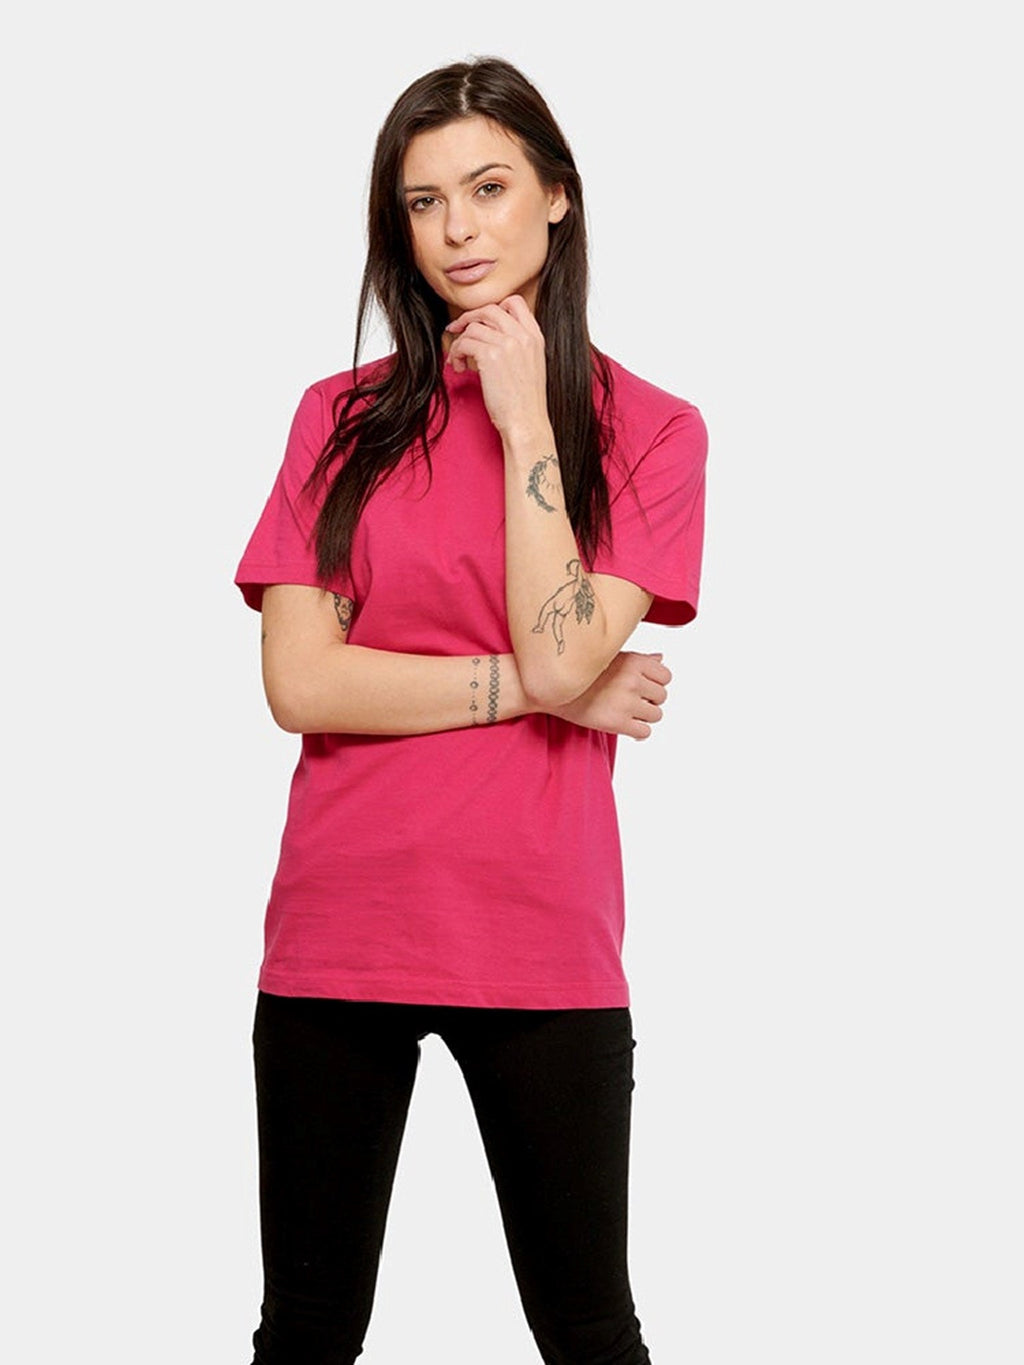 Nadmerné tričko - ružové